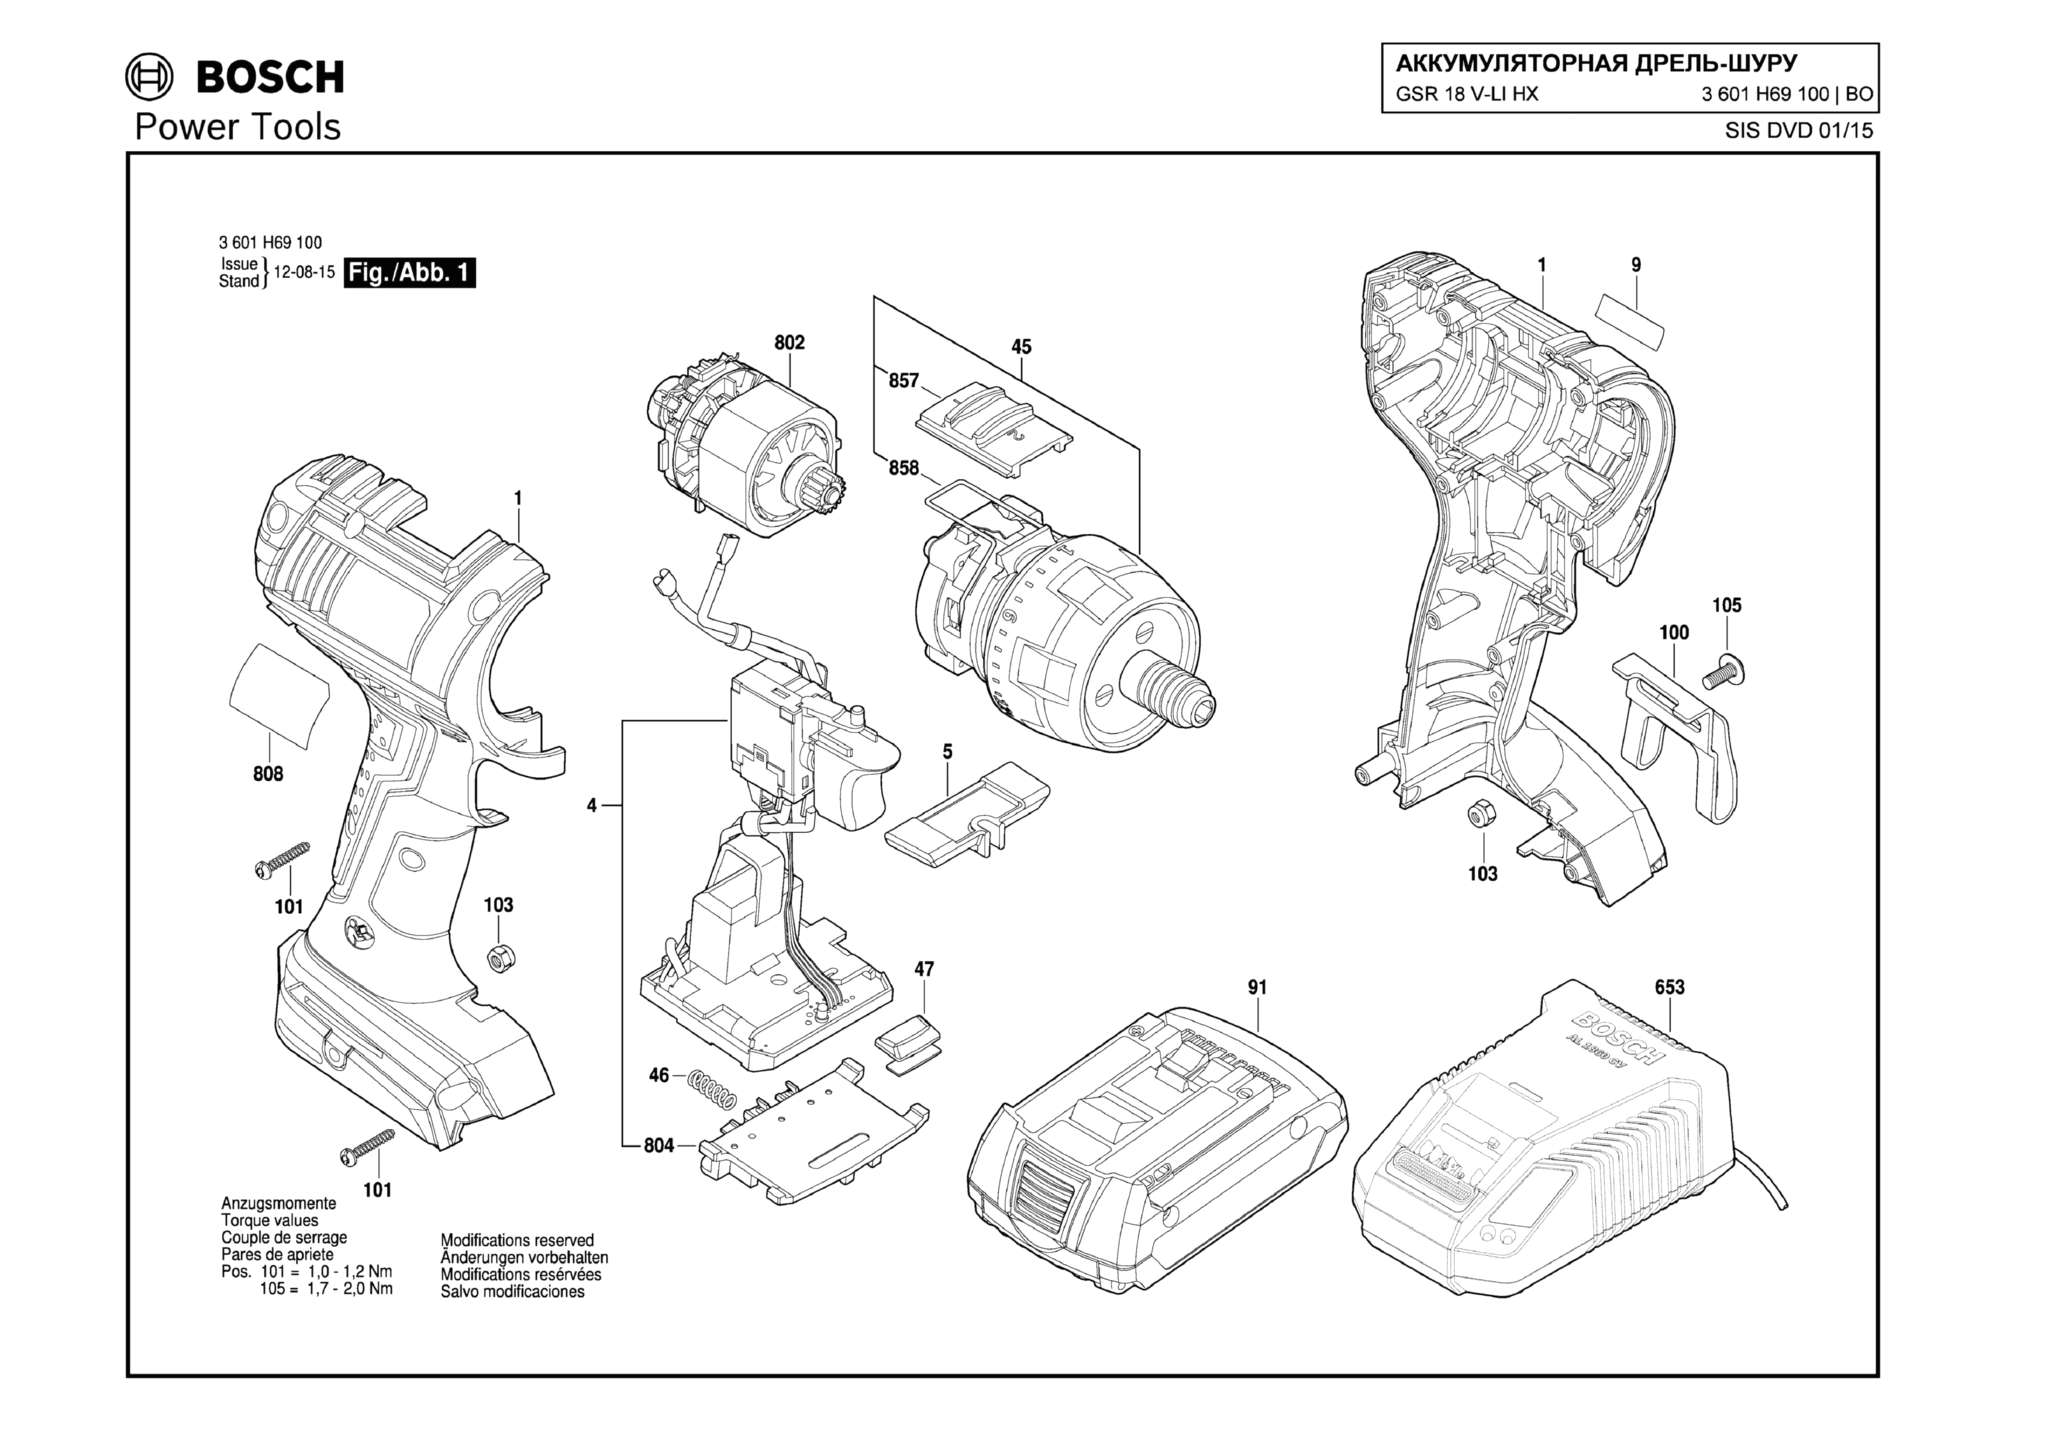 Запчасти, схема и деталировка Bosch GSR 18 V-LI HX (ТИП 3601H69100)